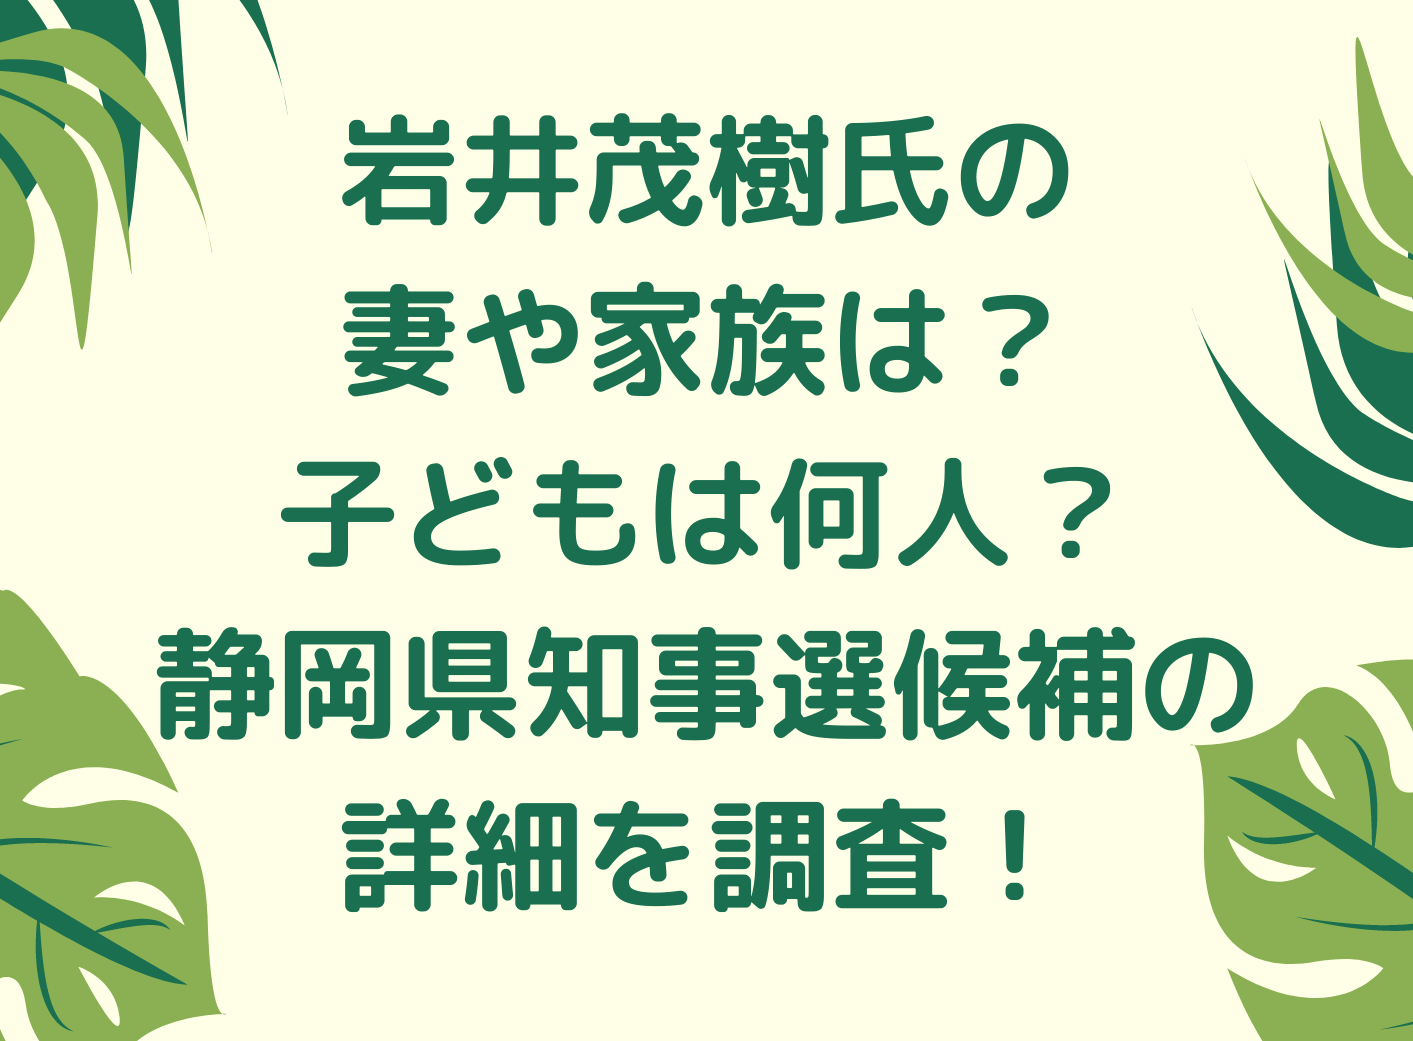 岩井茂樹氏ハラスメント疑惑の真相は 静岡県知事選自民候補の詳細を調査 くれすく 育児